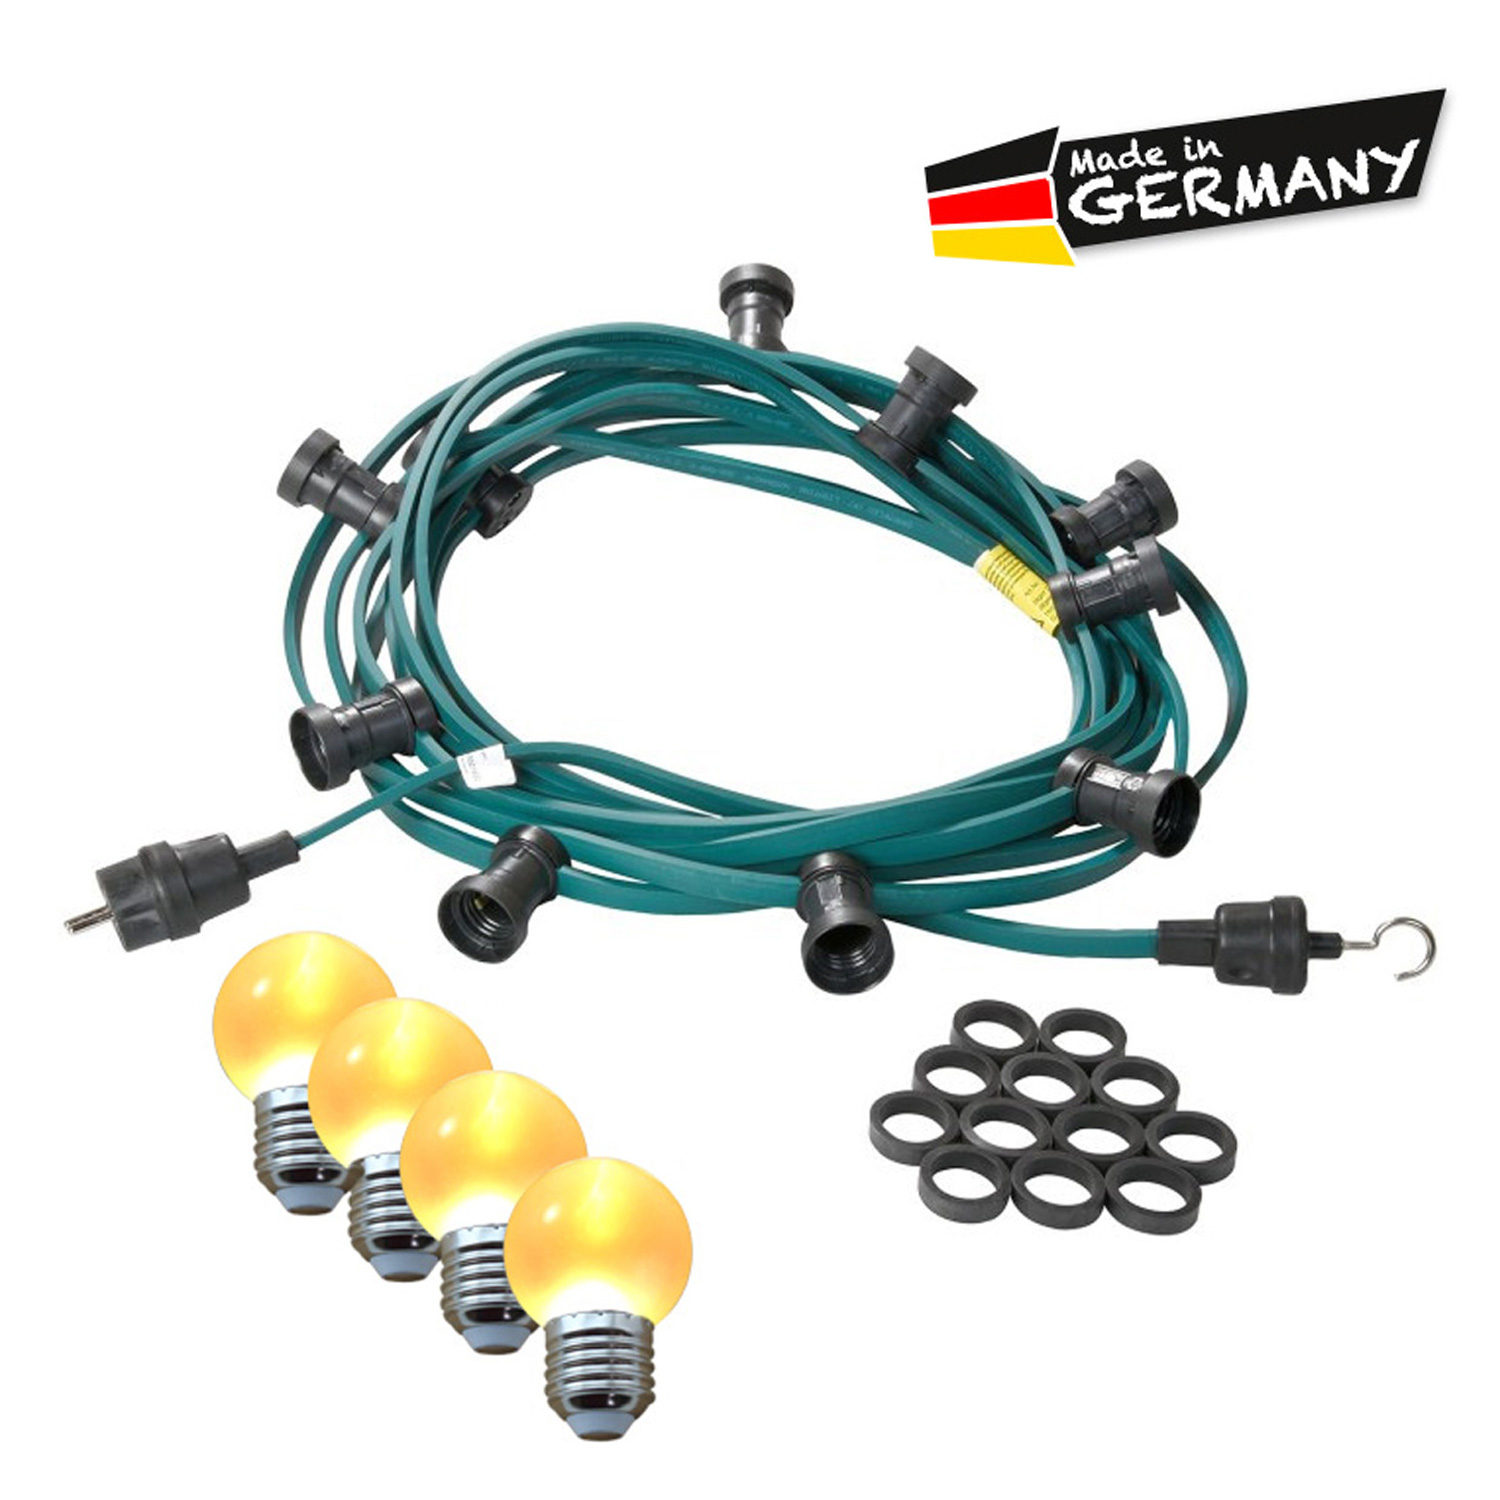 Illu-/Partylichterkette 10m | Außenlichterkette | Made in Germany | 20 x ultra-warmweisse LED Kugeln